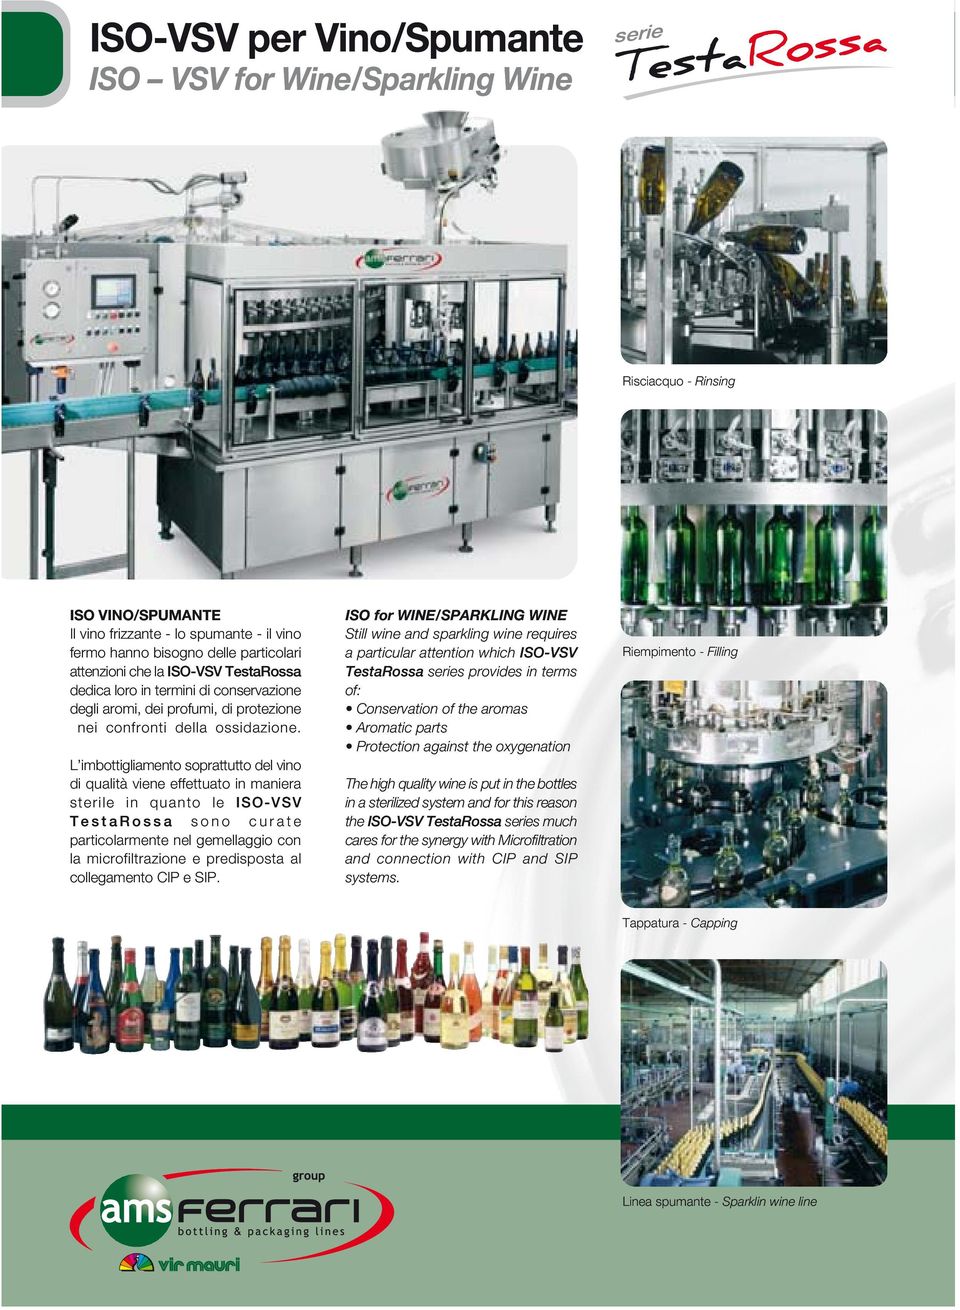 L imbottigliamento soprattutto del vino di qualità viene effettuato in maniera sterile in quanto le ISO-VSV sono curate particolarmente nel gemellaggio con la microfiltrazione e predisposta al